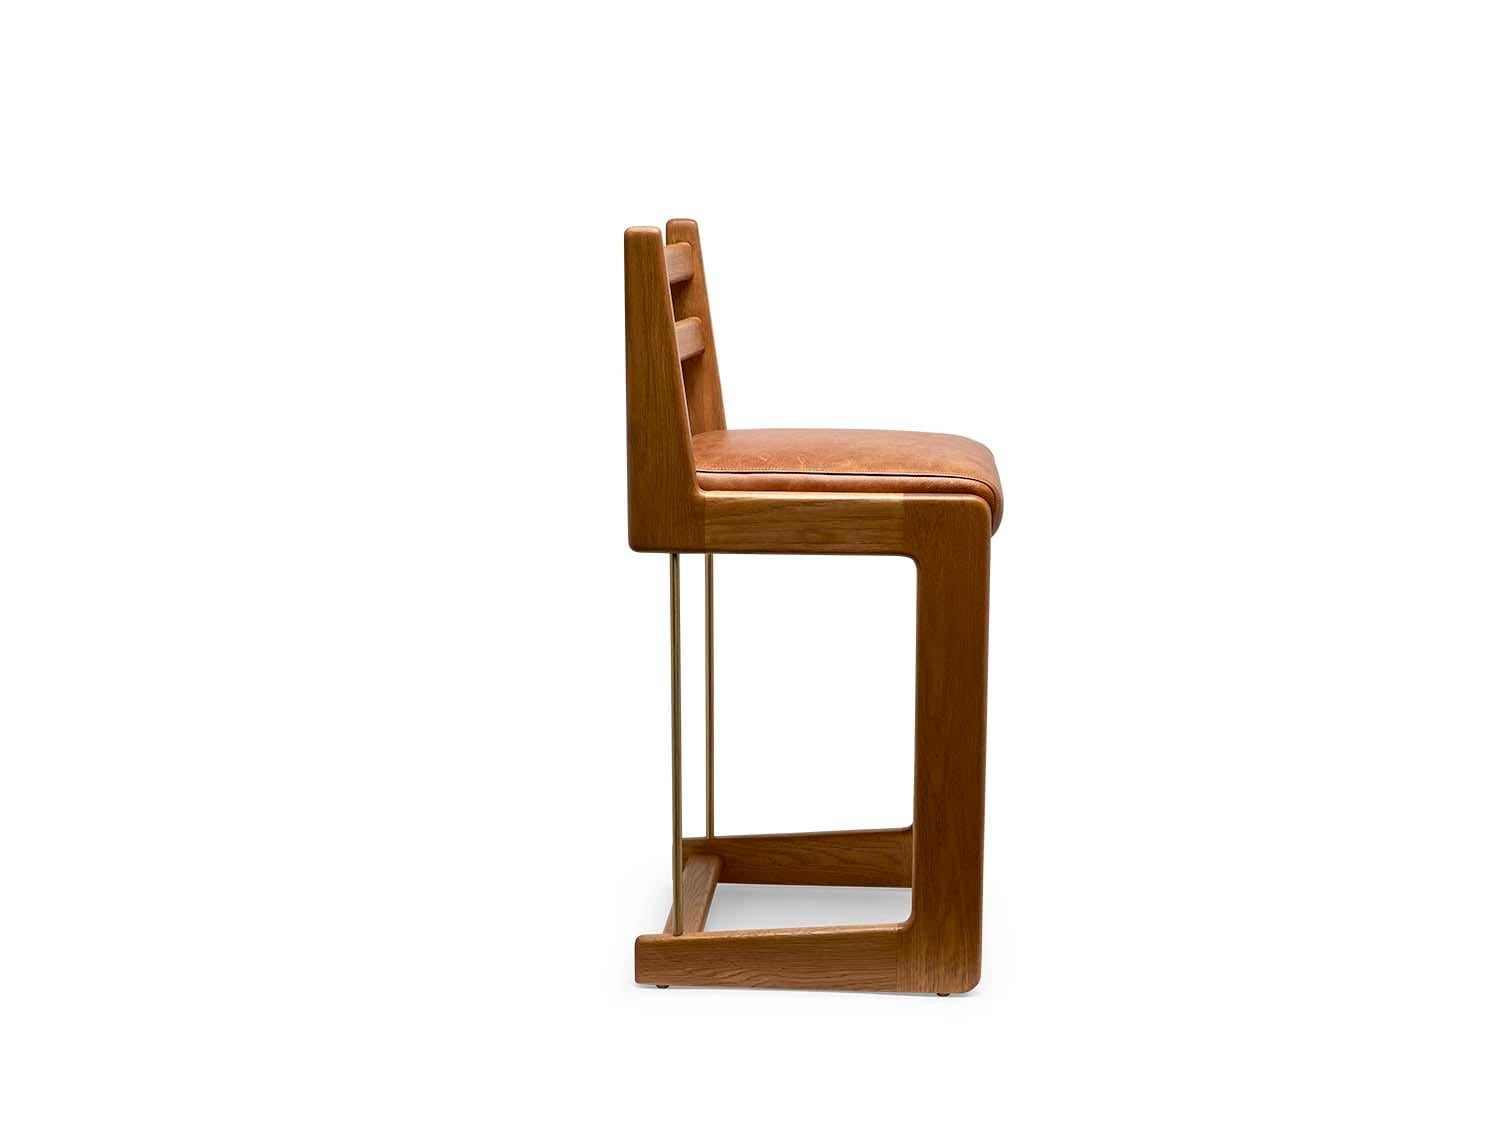 lawson fenning bar stools